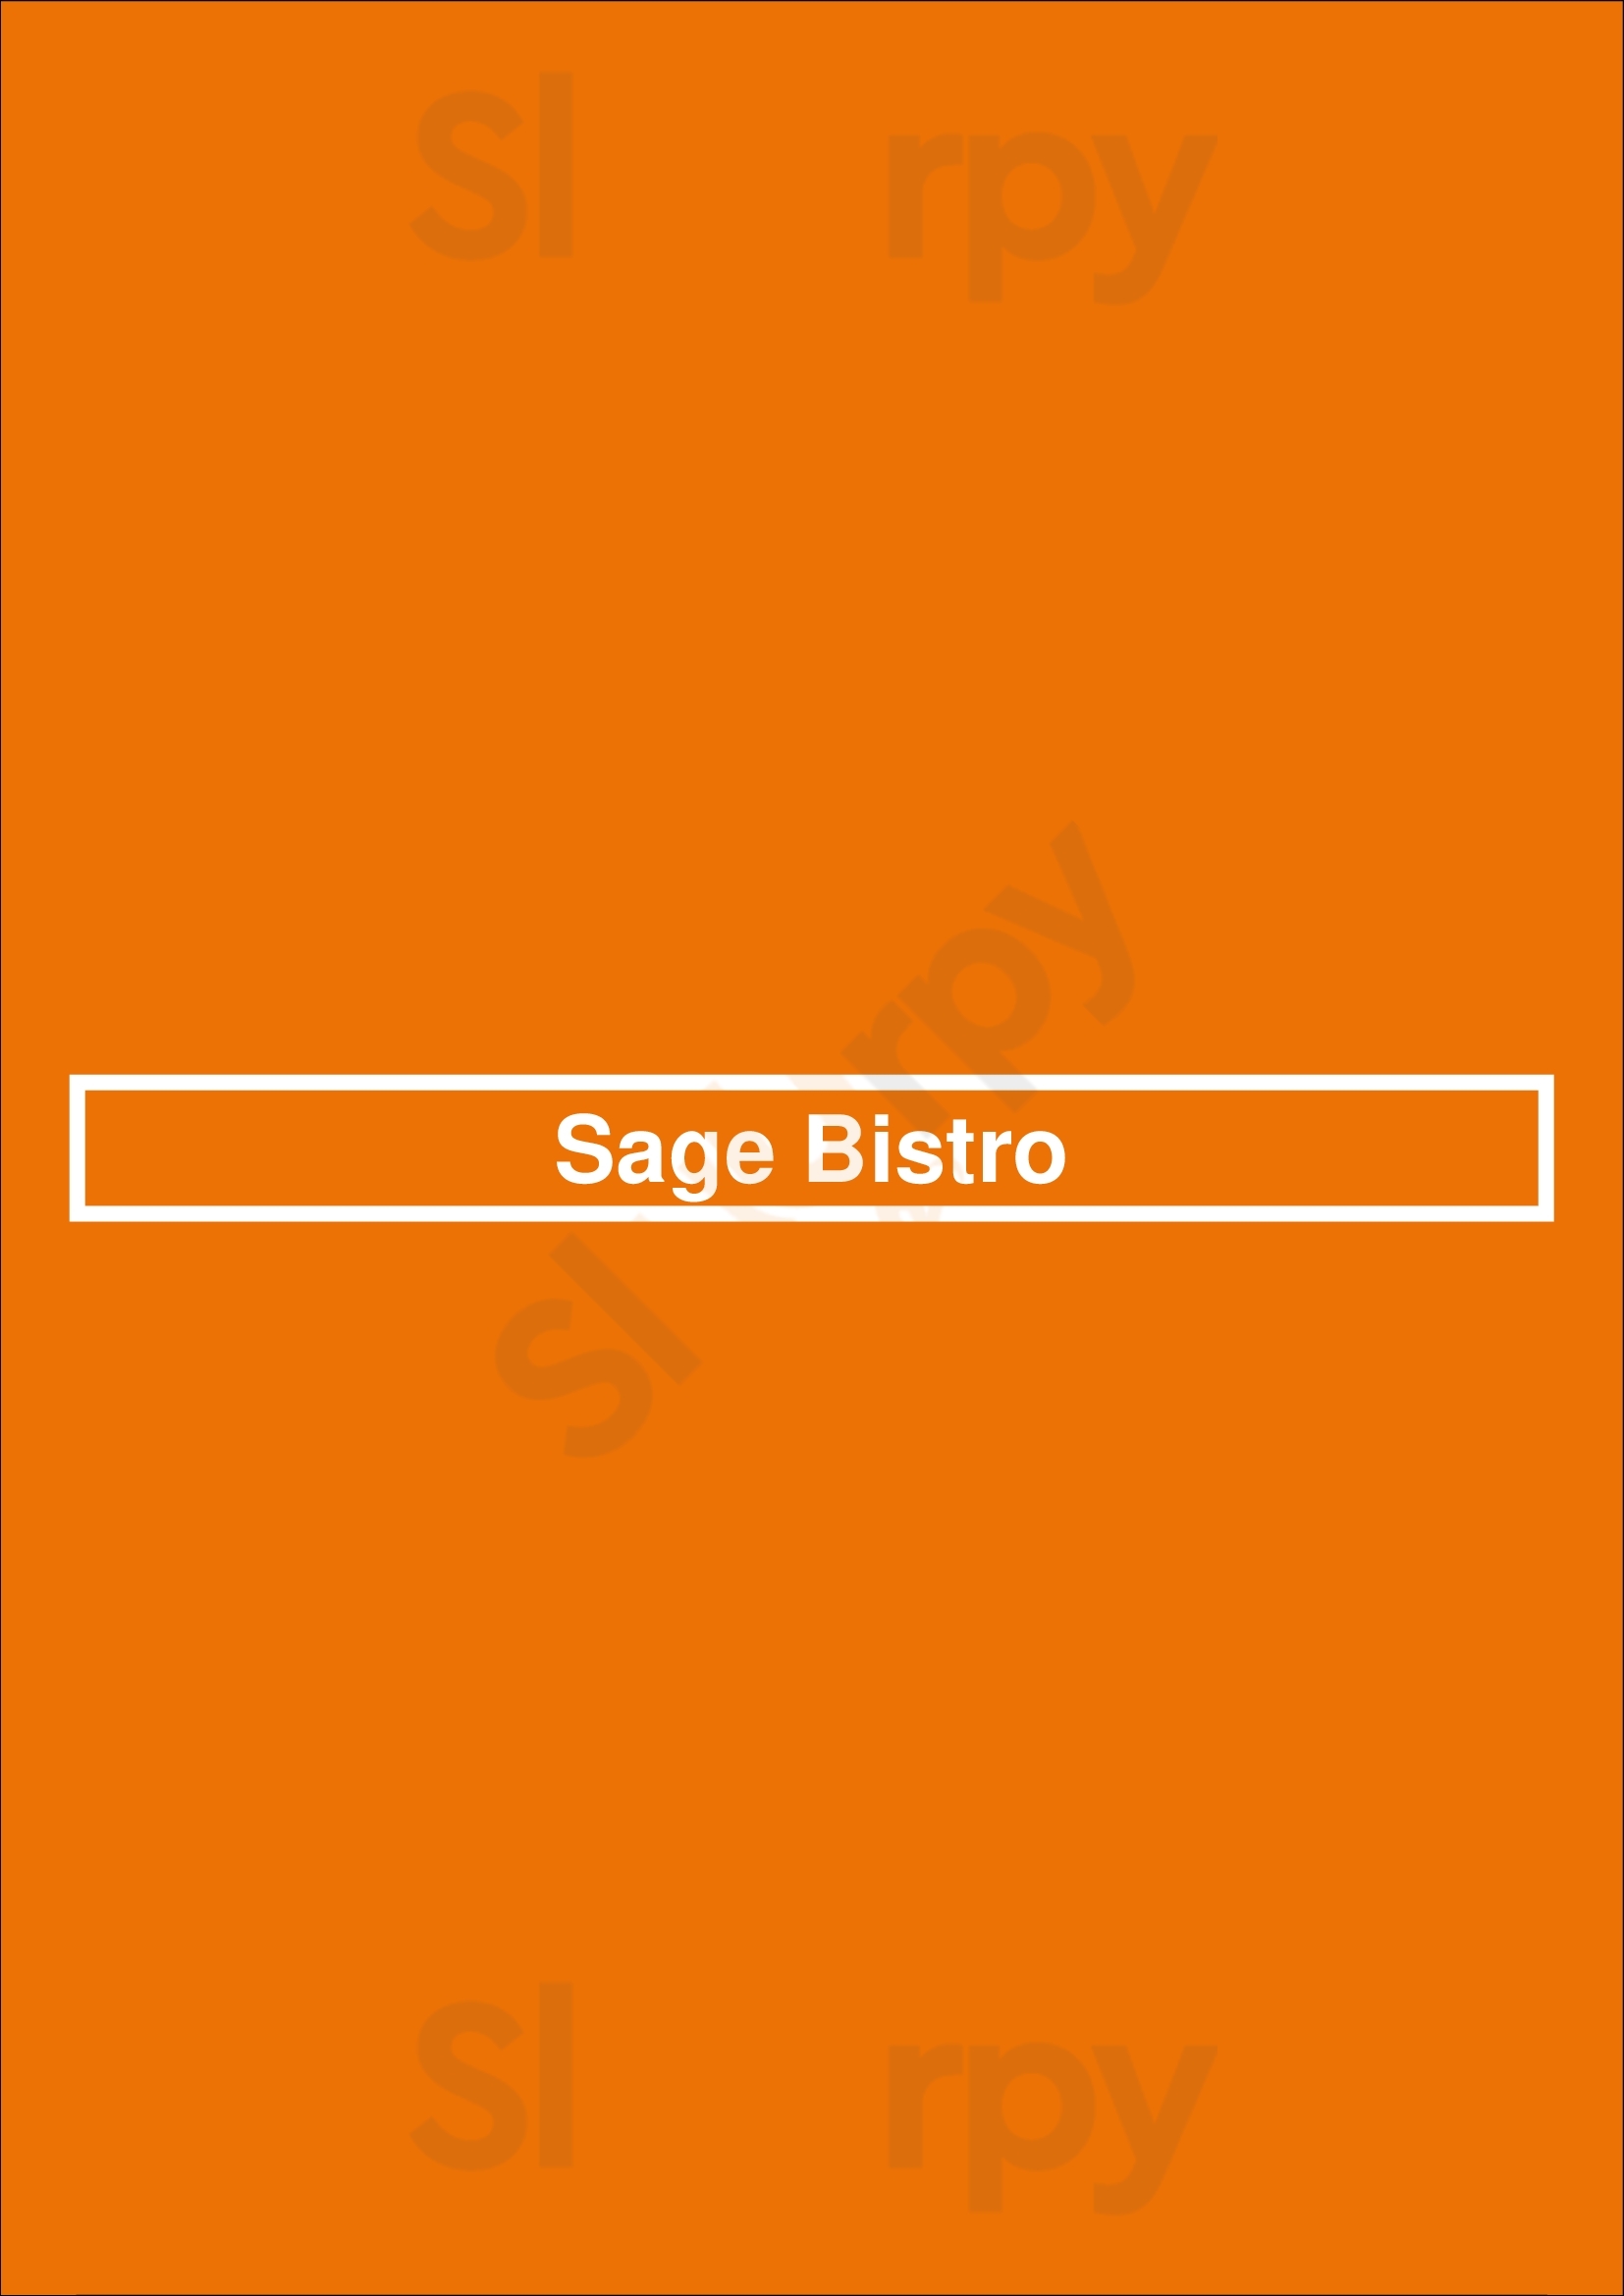 Sage Bistro Vancouver Menu - 1